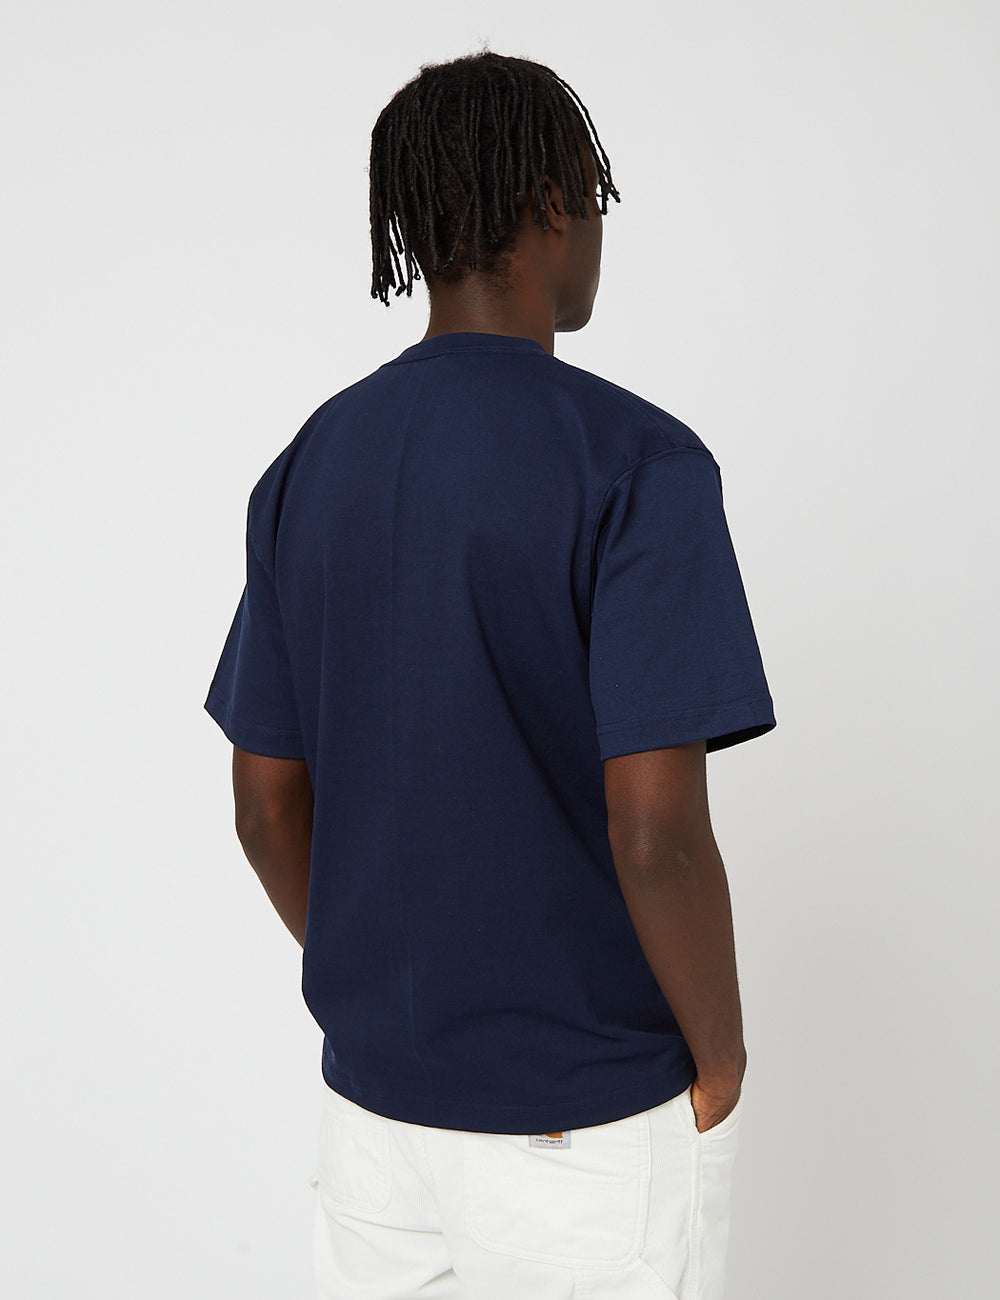 T-Shirt (8oz Pocket Marineblau USA EXCESS - URBAN Cotton) I Camber 302